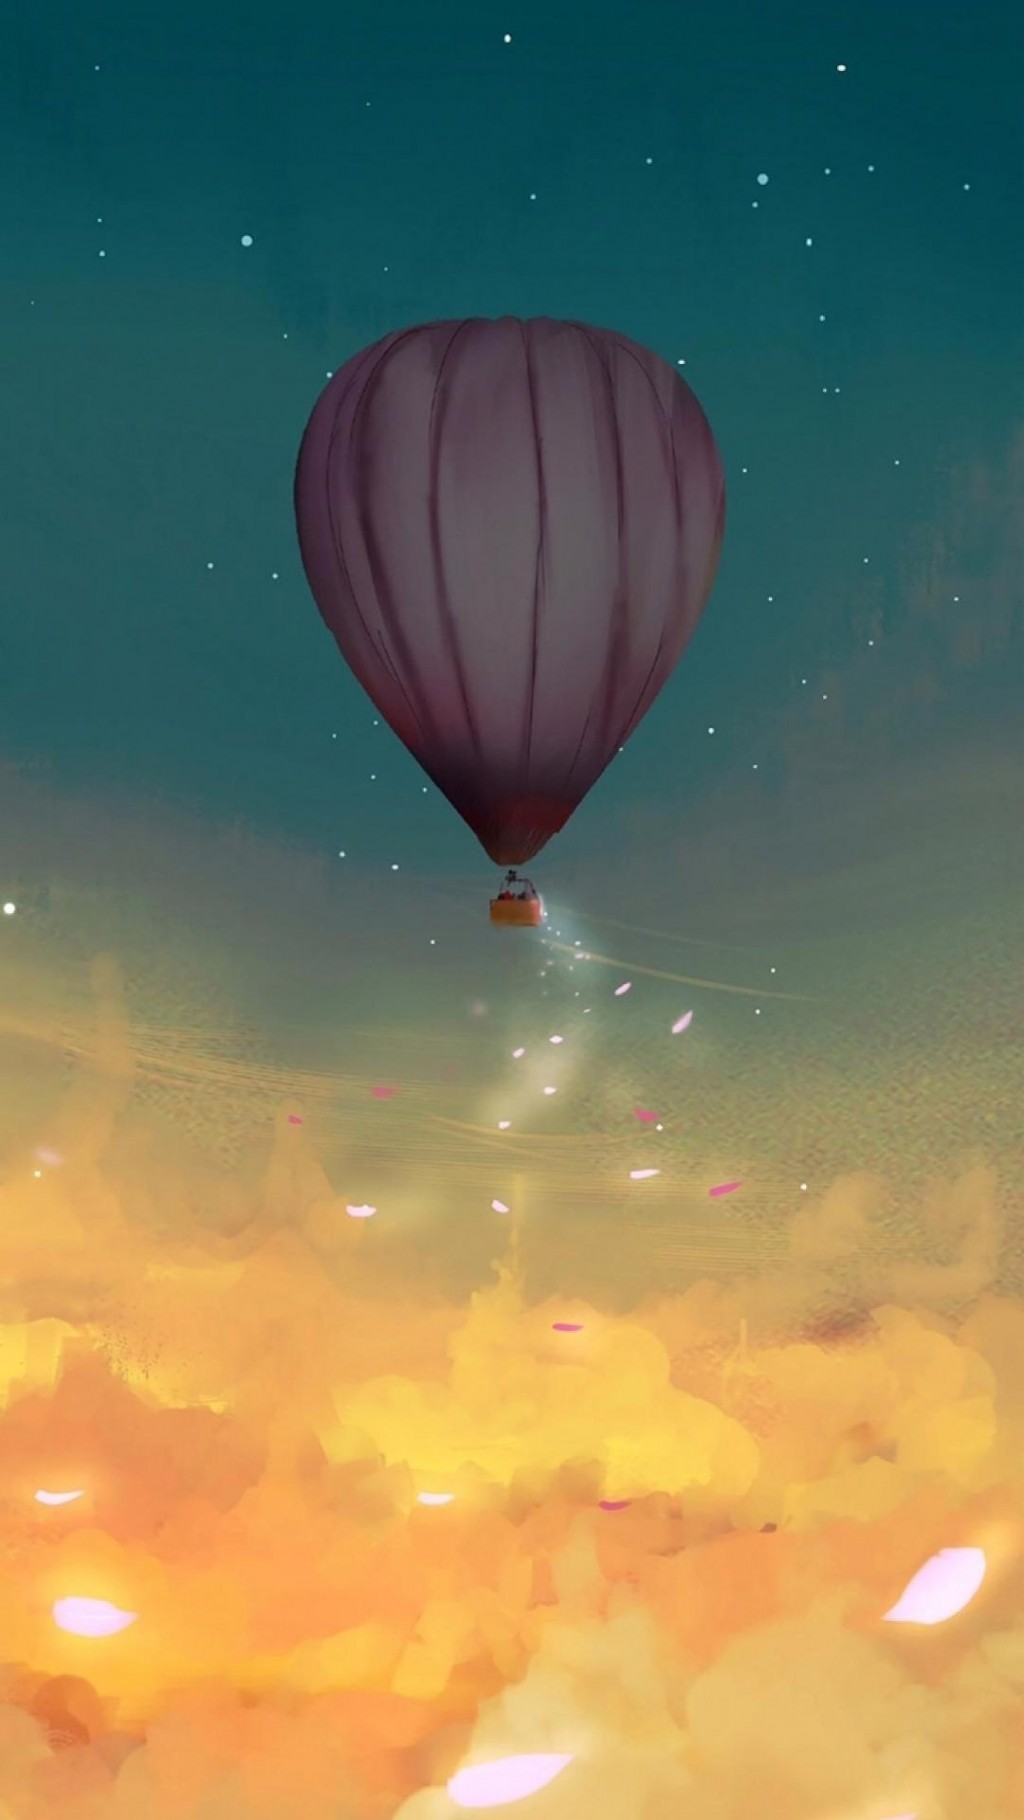 浪漫热气球梦幻二次元场景